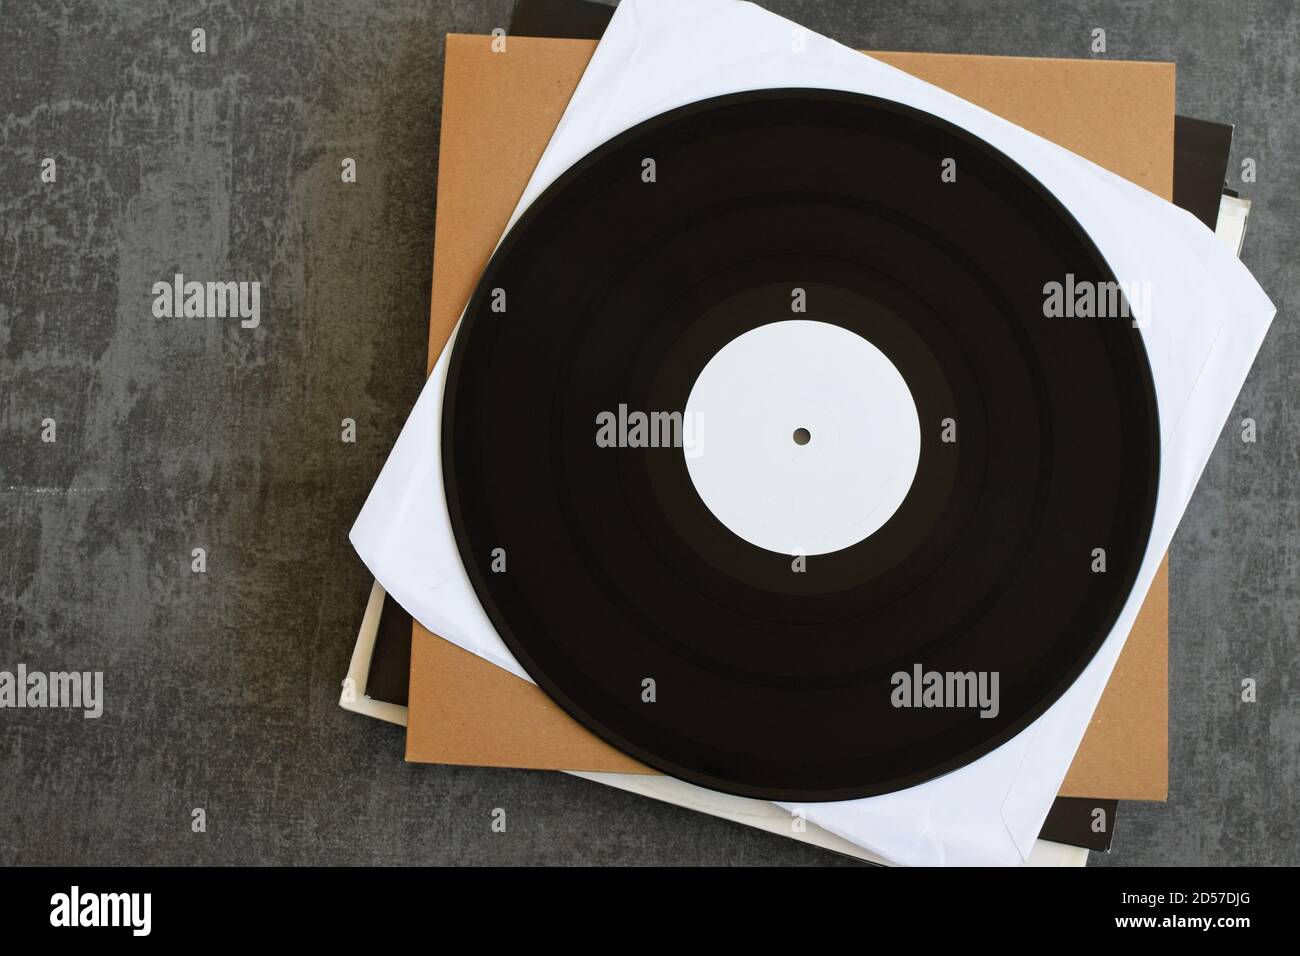 Generisches White Label Promo Vinyl Schallplatten. Musikhintergrund mit Copy-Space für Ihren Text. Stockfoto